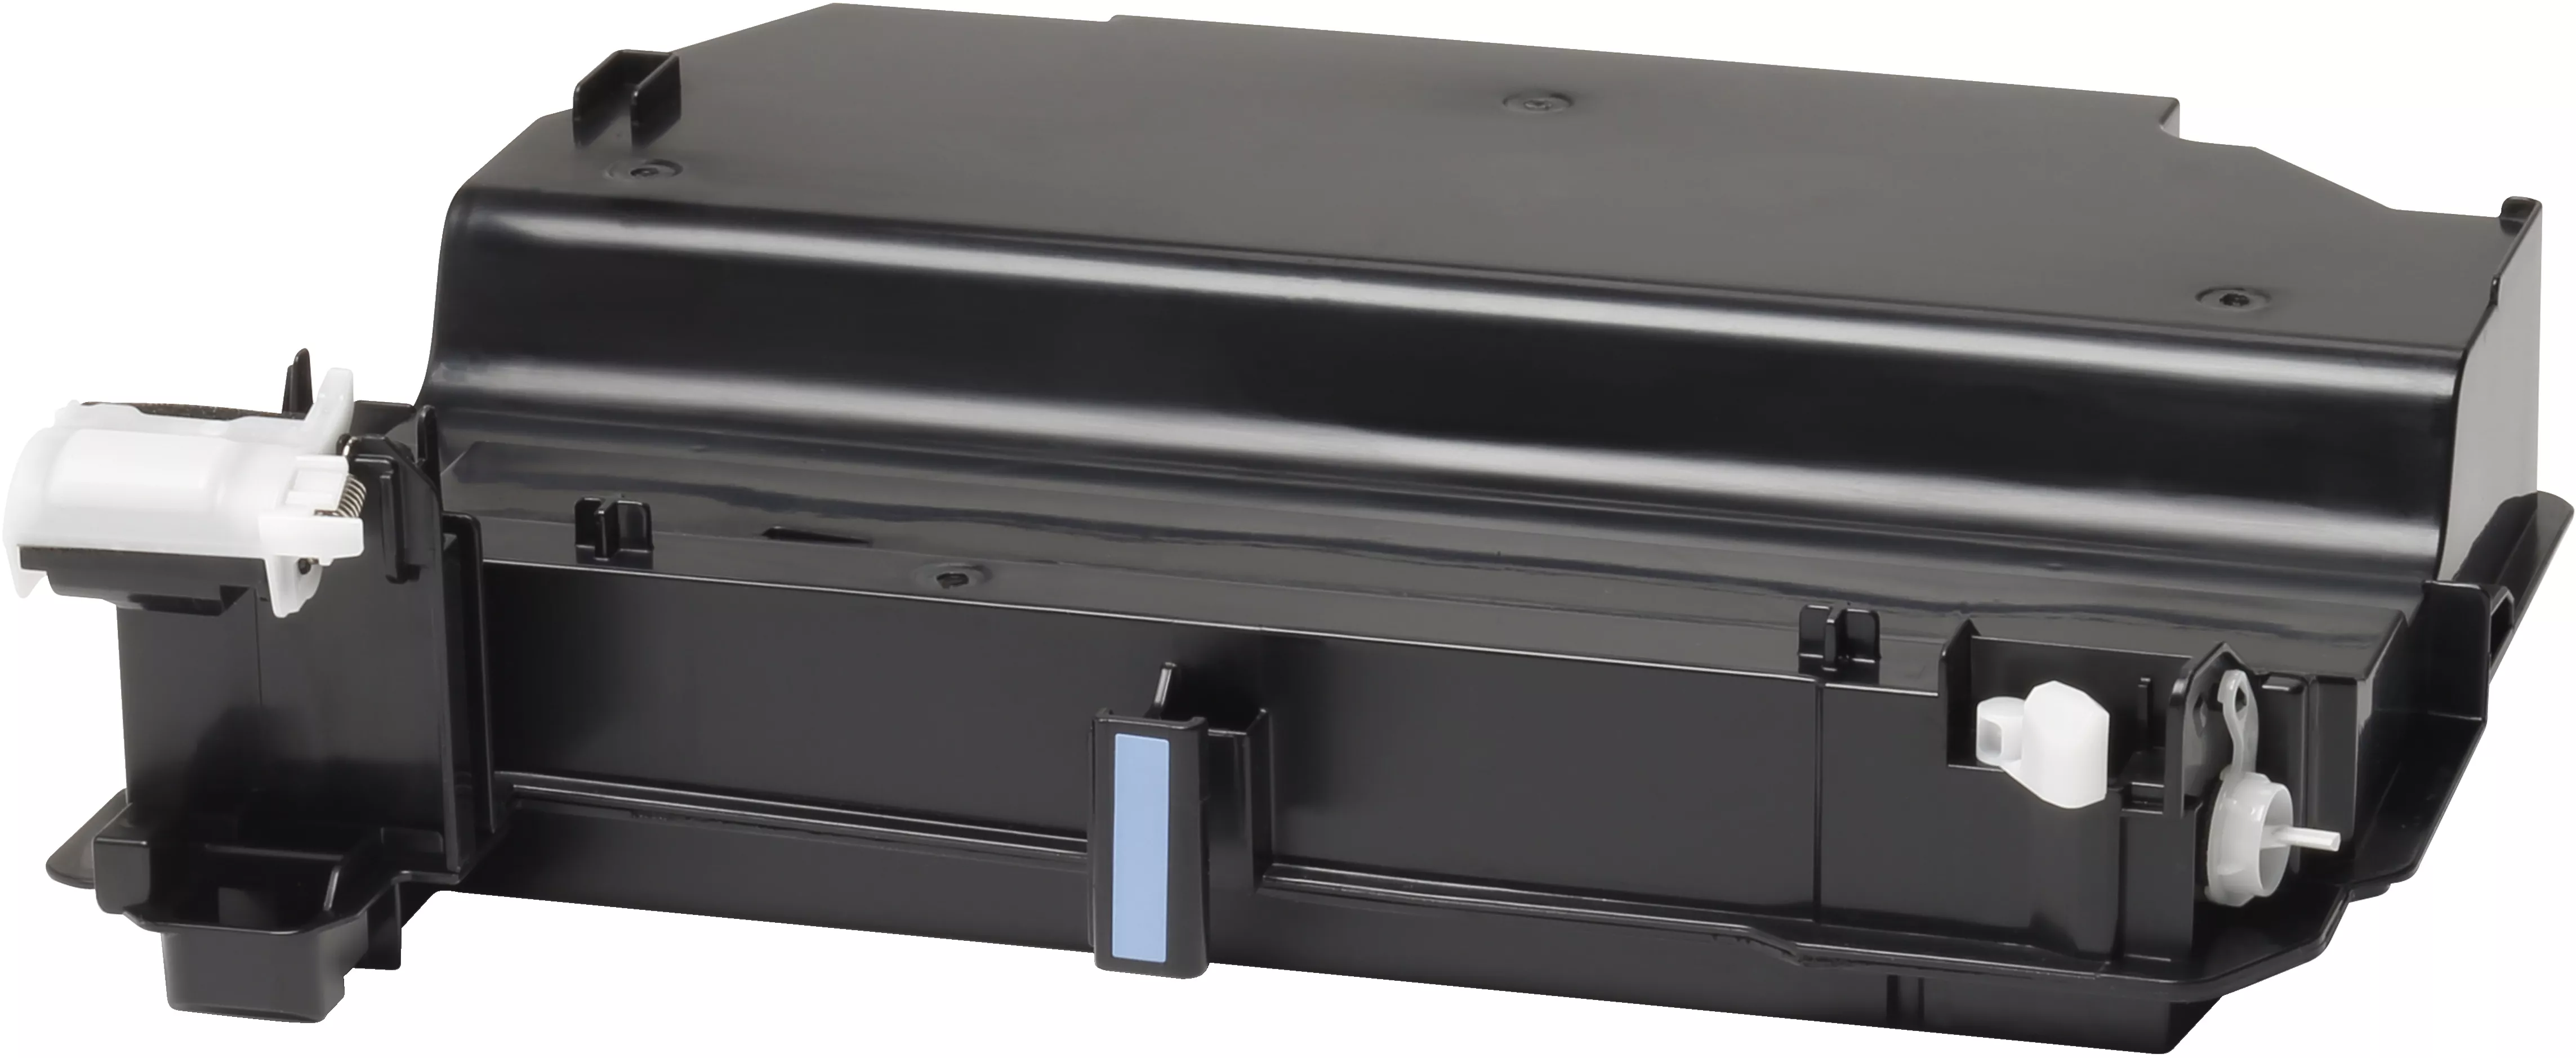 Vente HP LaserJet Toner Collection Unit HP au meilleur prix - visuel 2